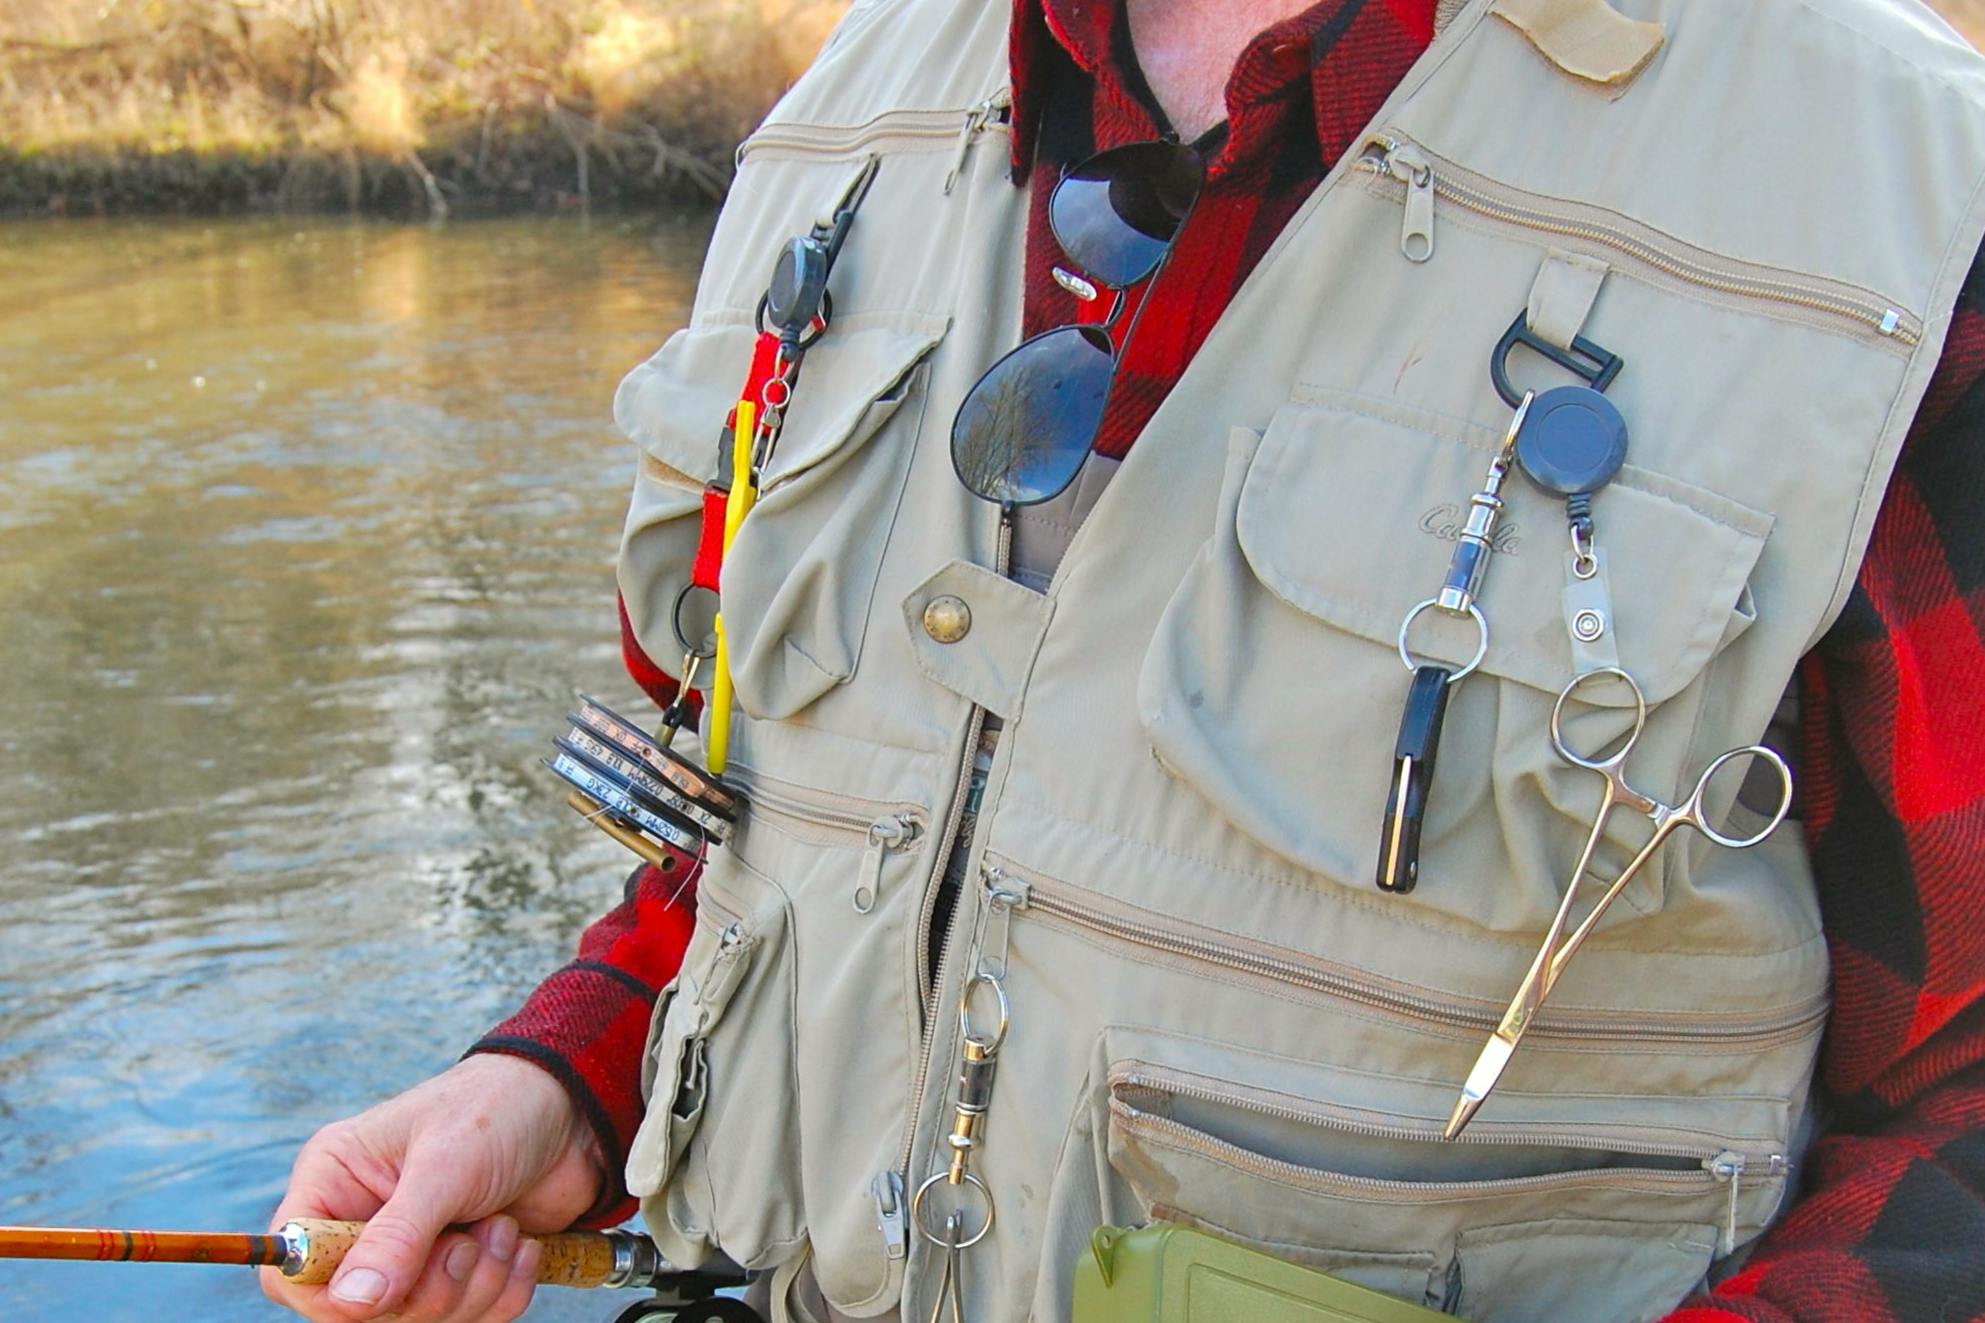 Ultralight Fishing Vest